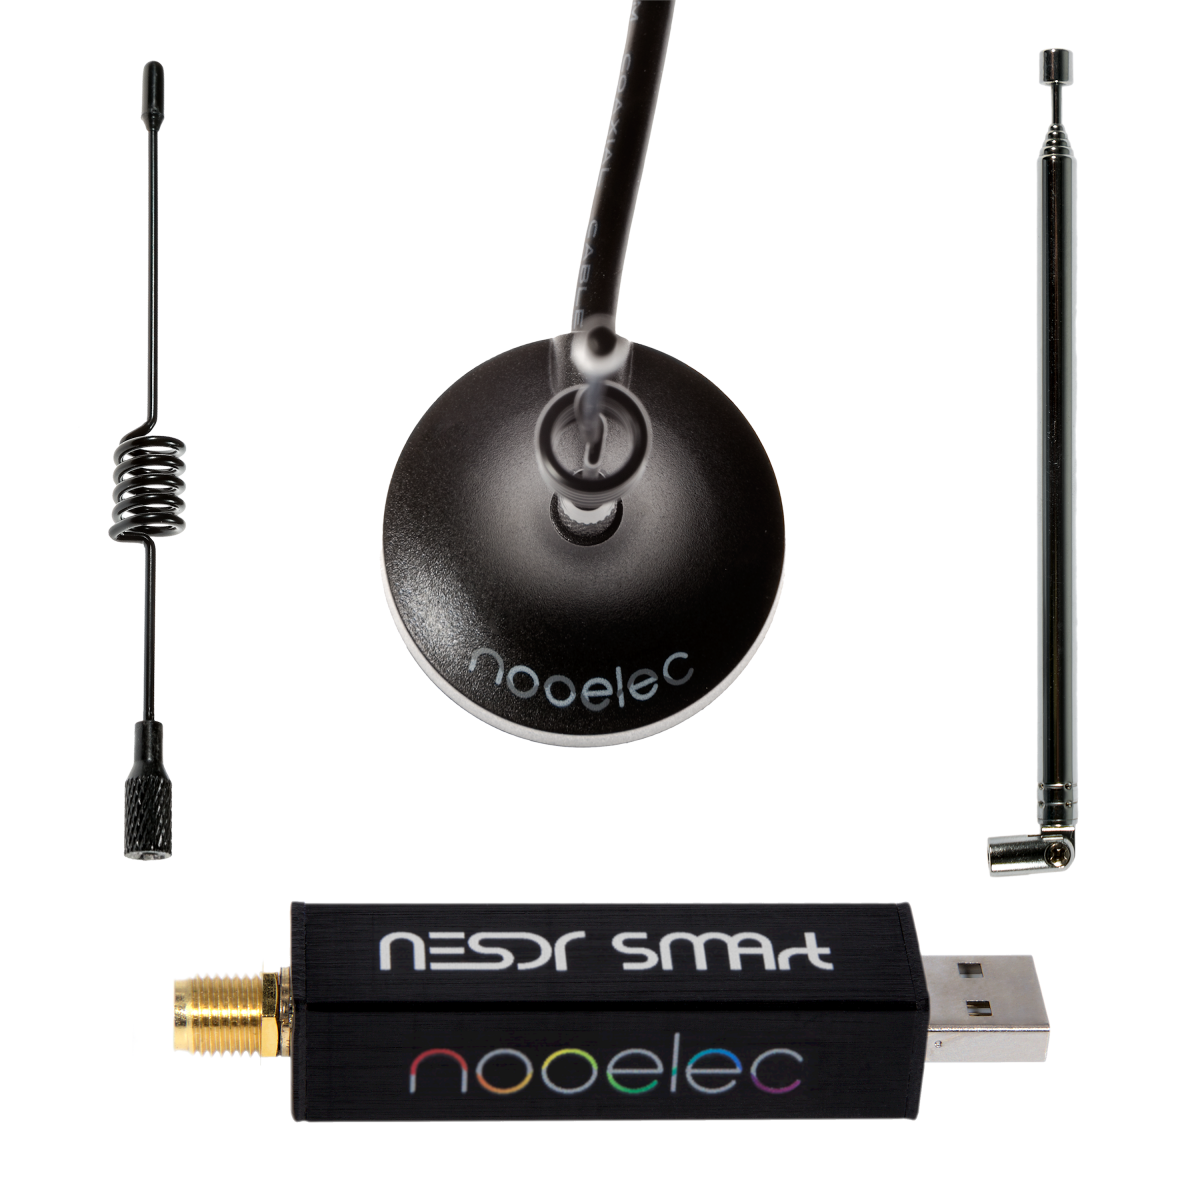  Nooelec Paquete RTL-SDR v5 - NESDR Smart HF/VHF/UHF